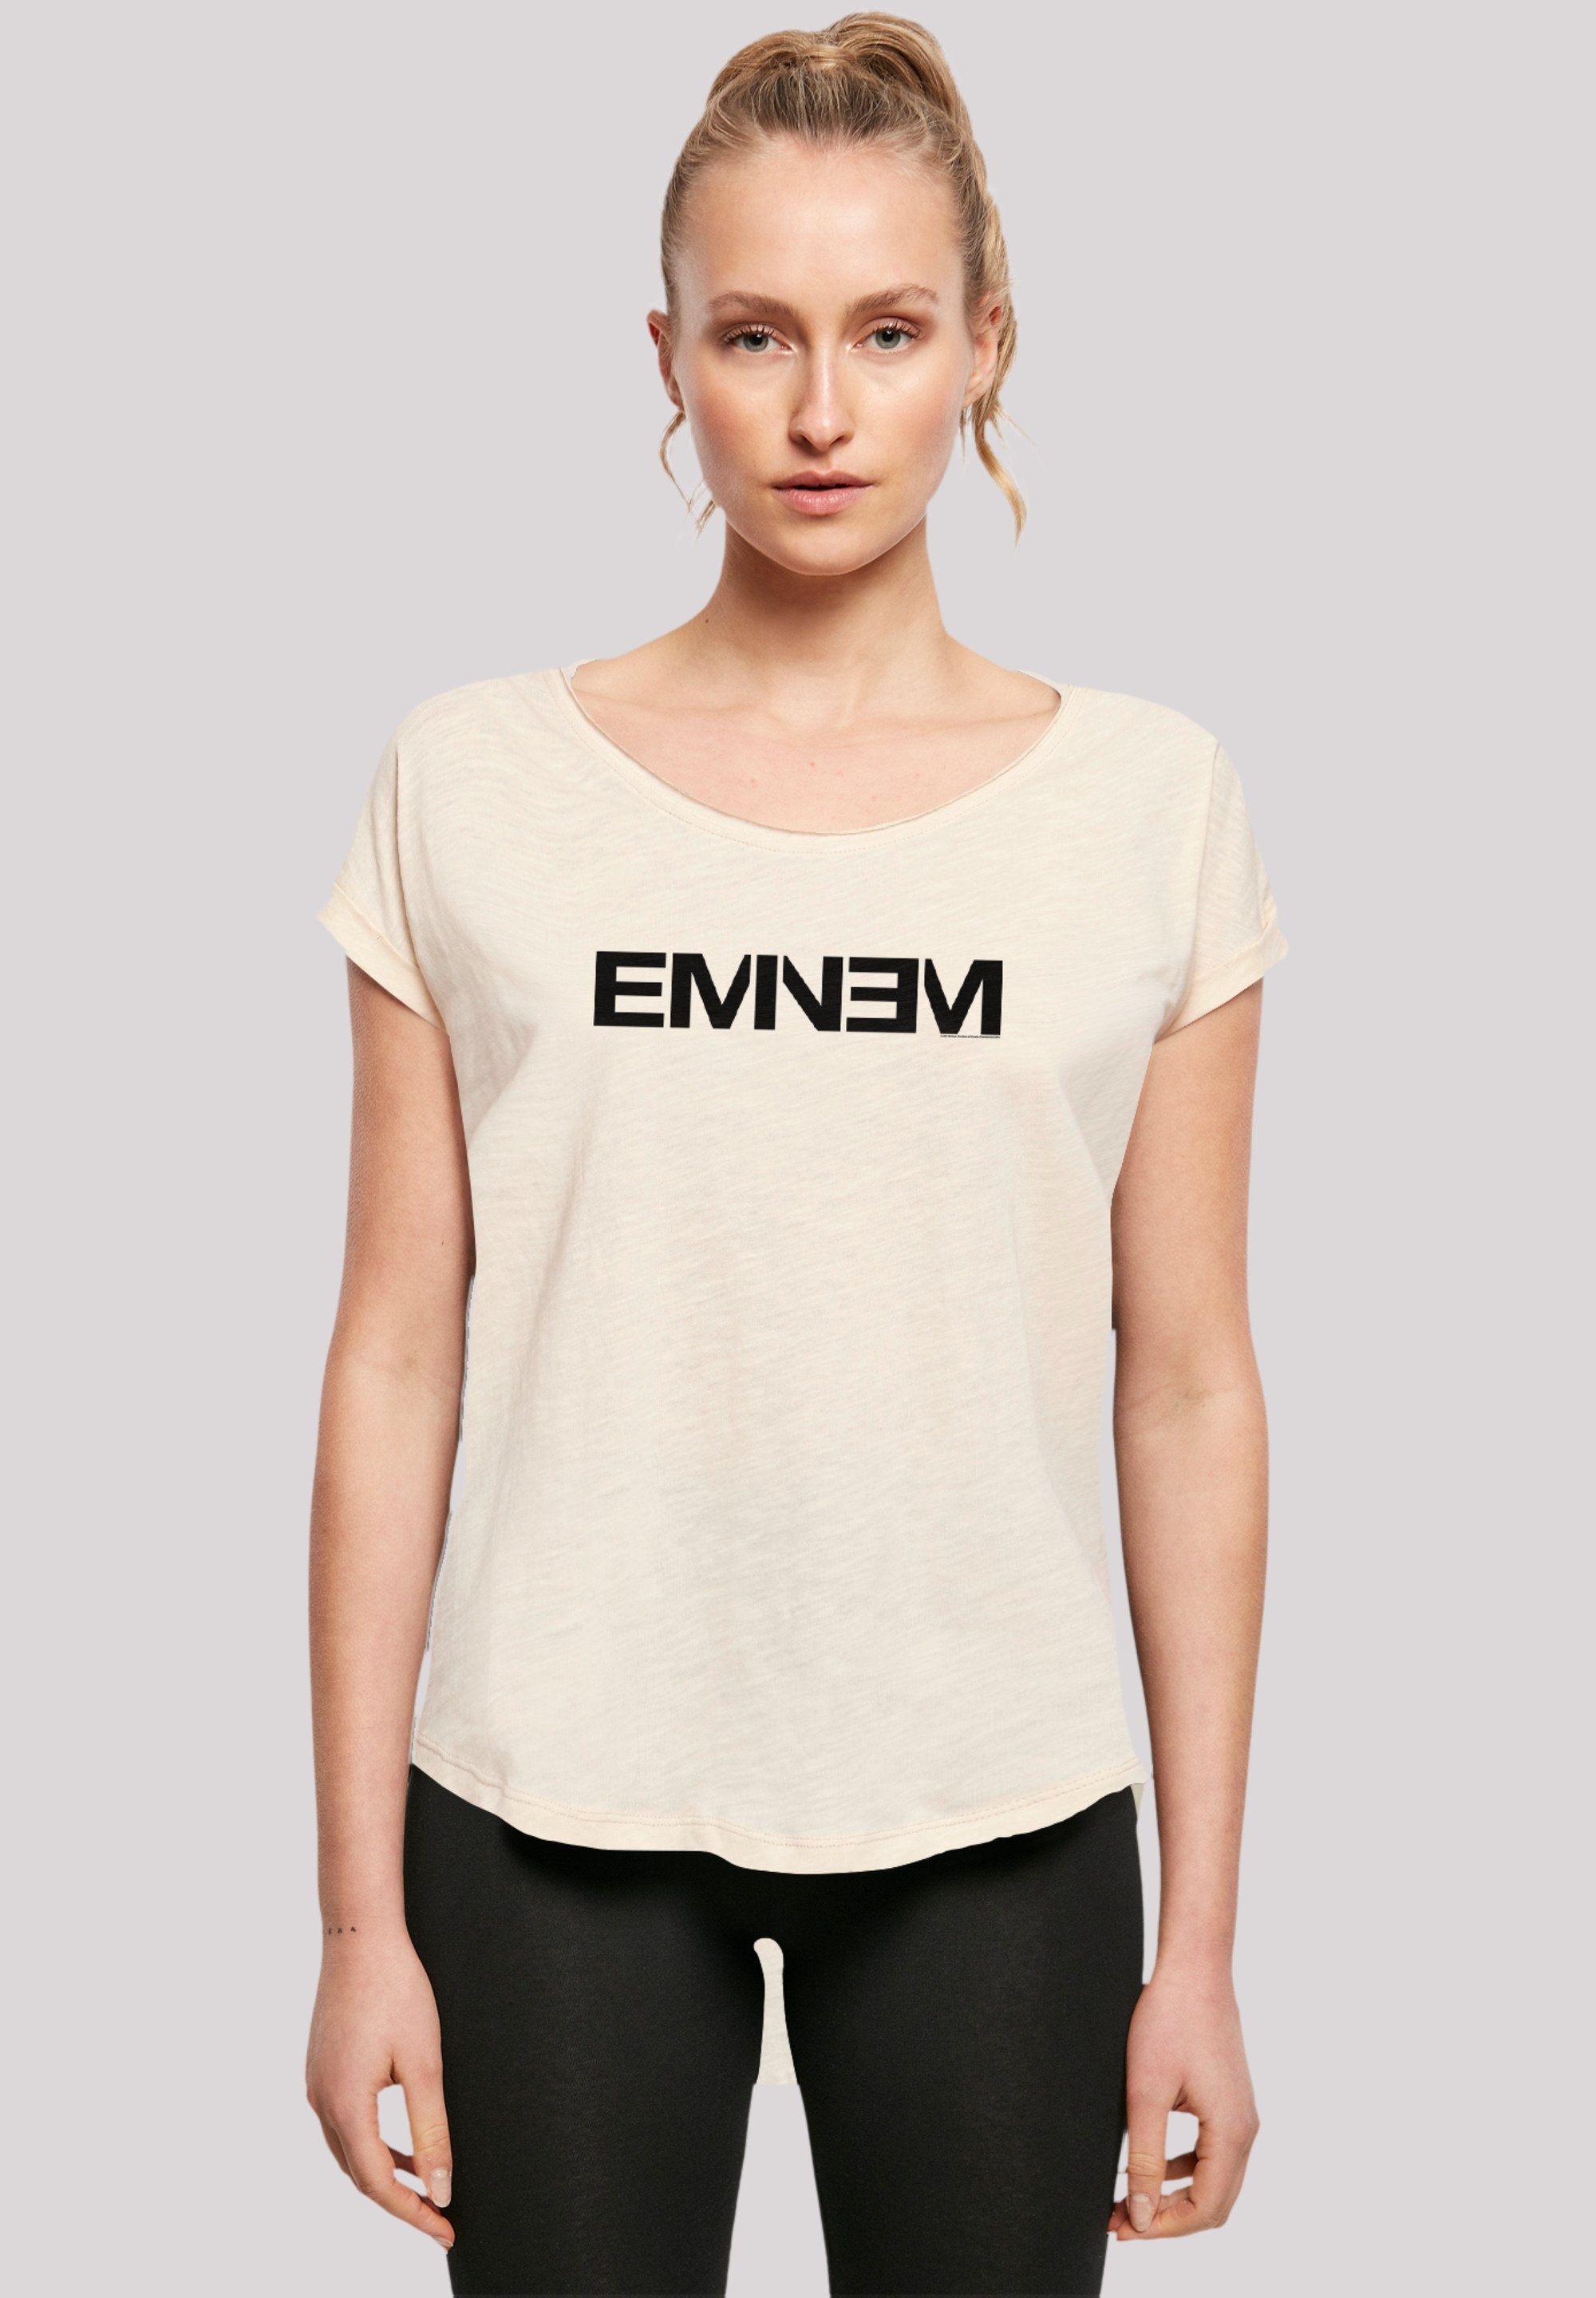 F4NT4STIC T-Shirt Eminem Hip Hop Rap Music Premium Qualität, Musik, Sehr  weicher Baumwollstoff mit hohem Tragekomfort